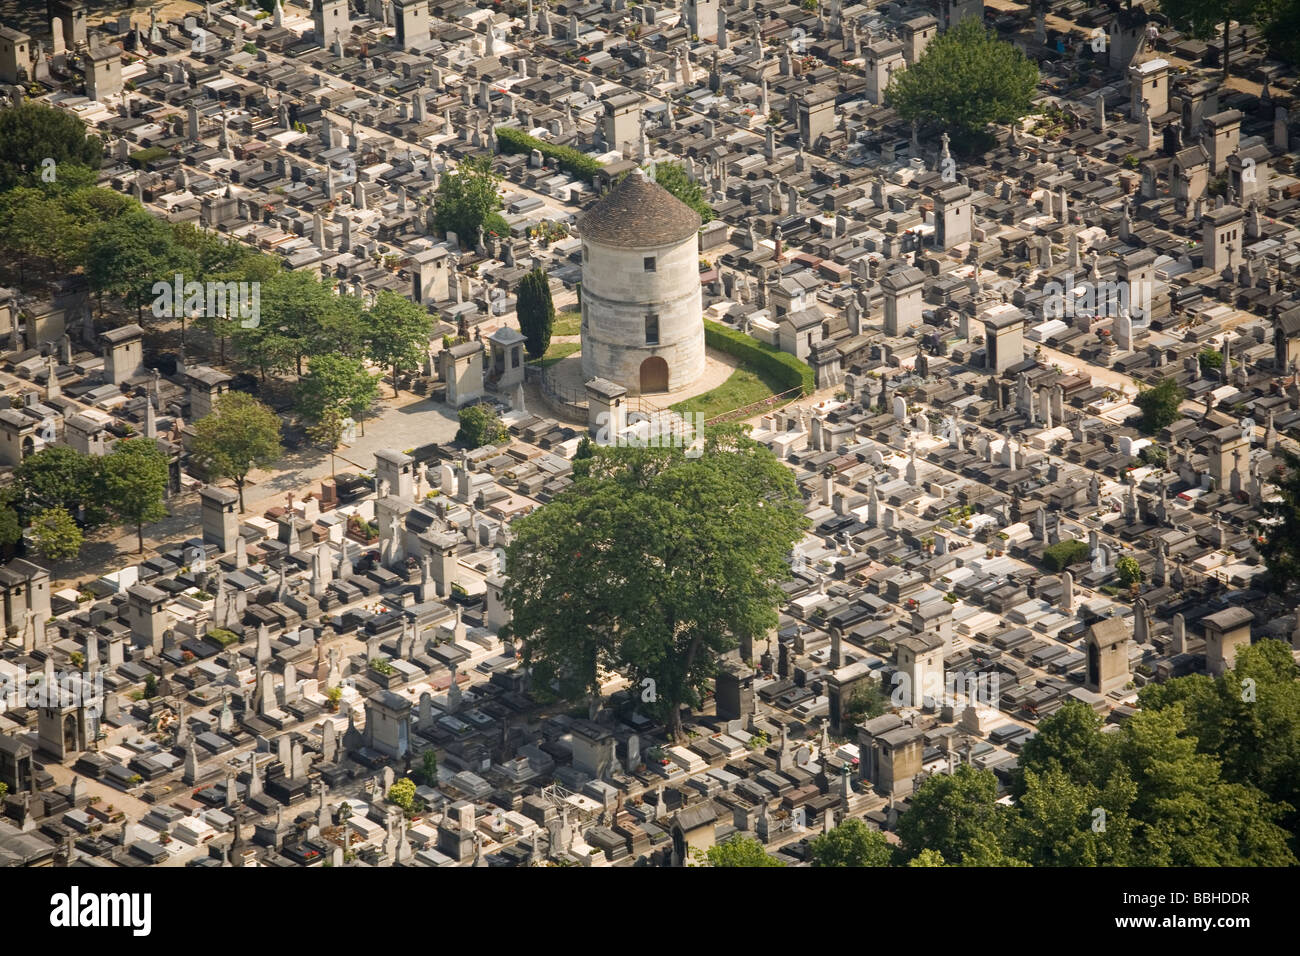 Cimetiere de Montmartre is the most famous cemetery in Paris France Stock Photo